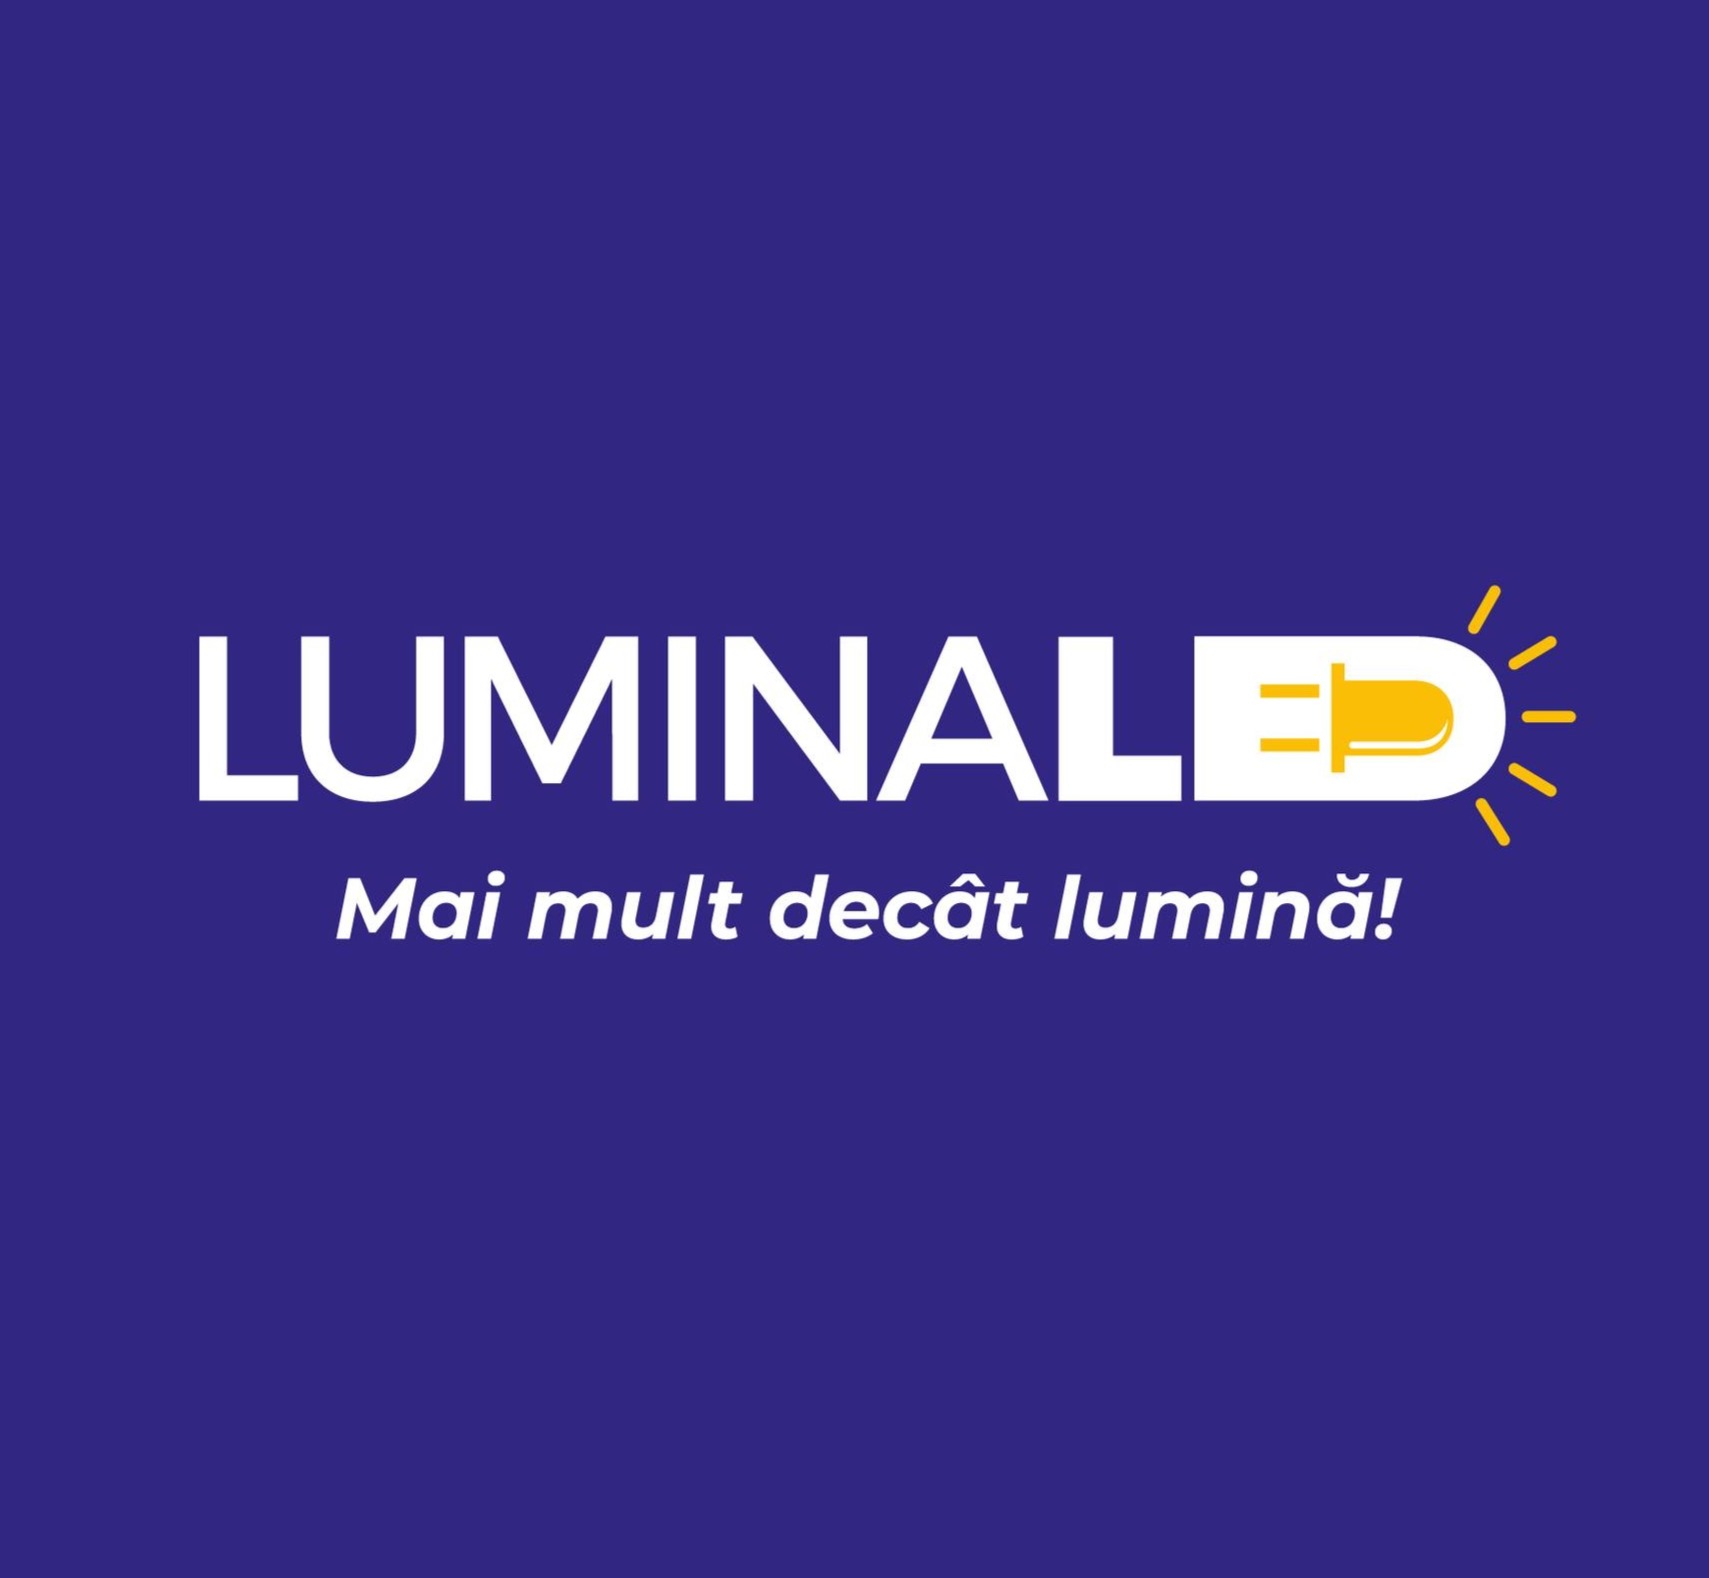 LuminaLed